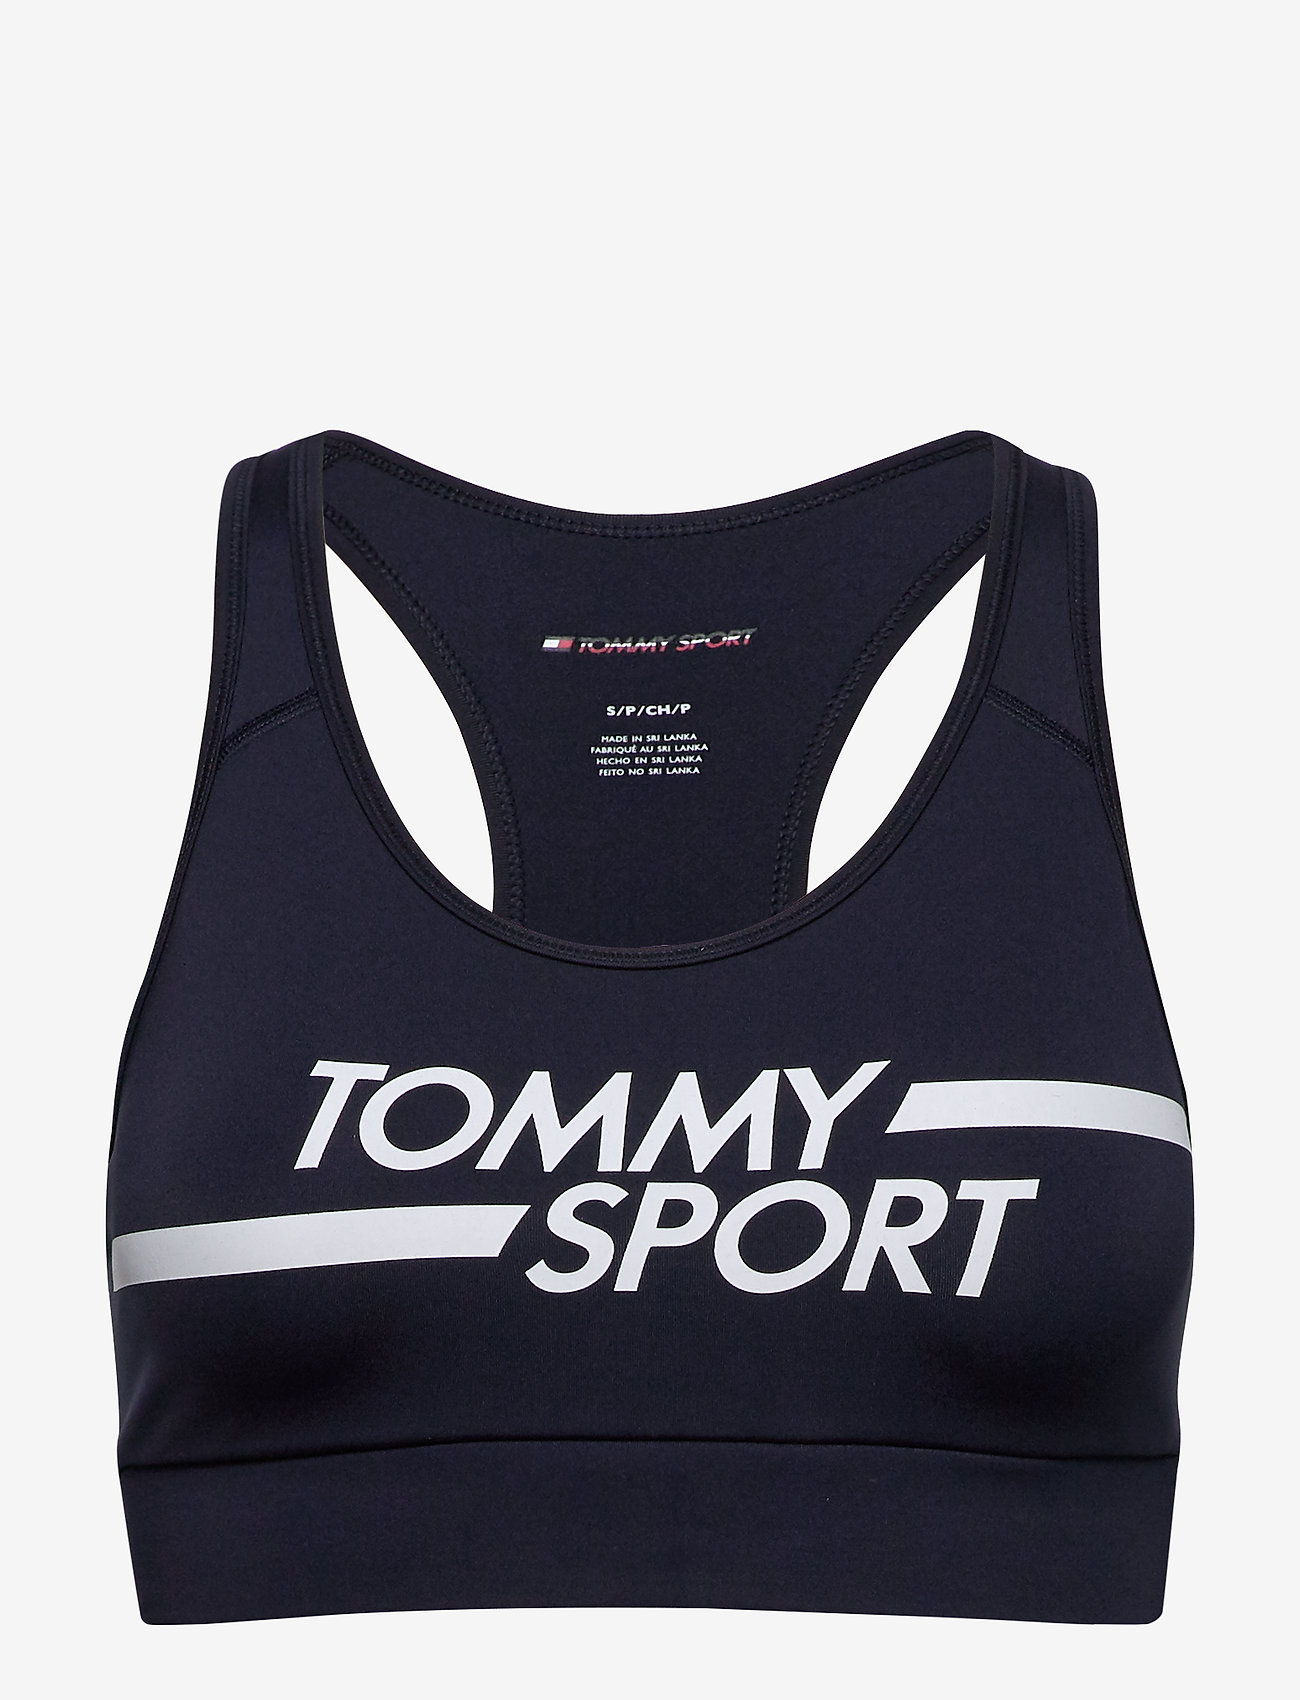 tommy sport vest